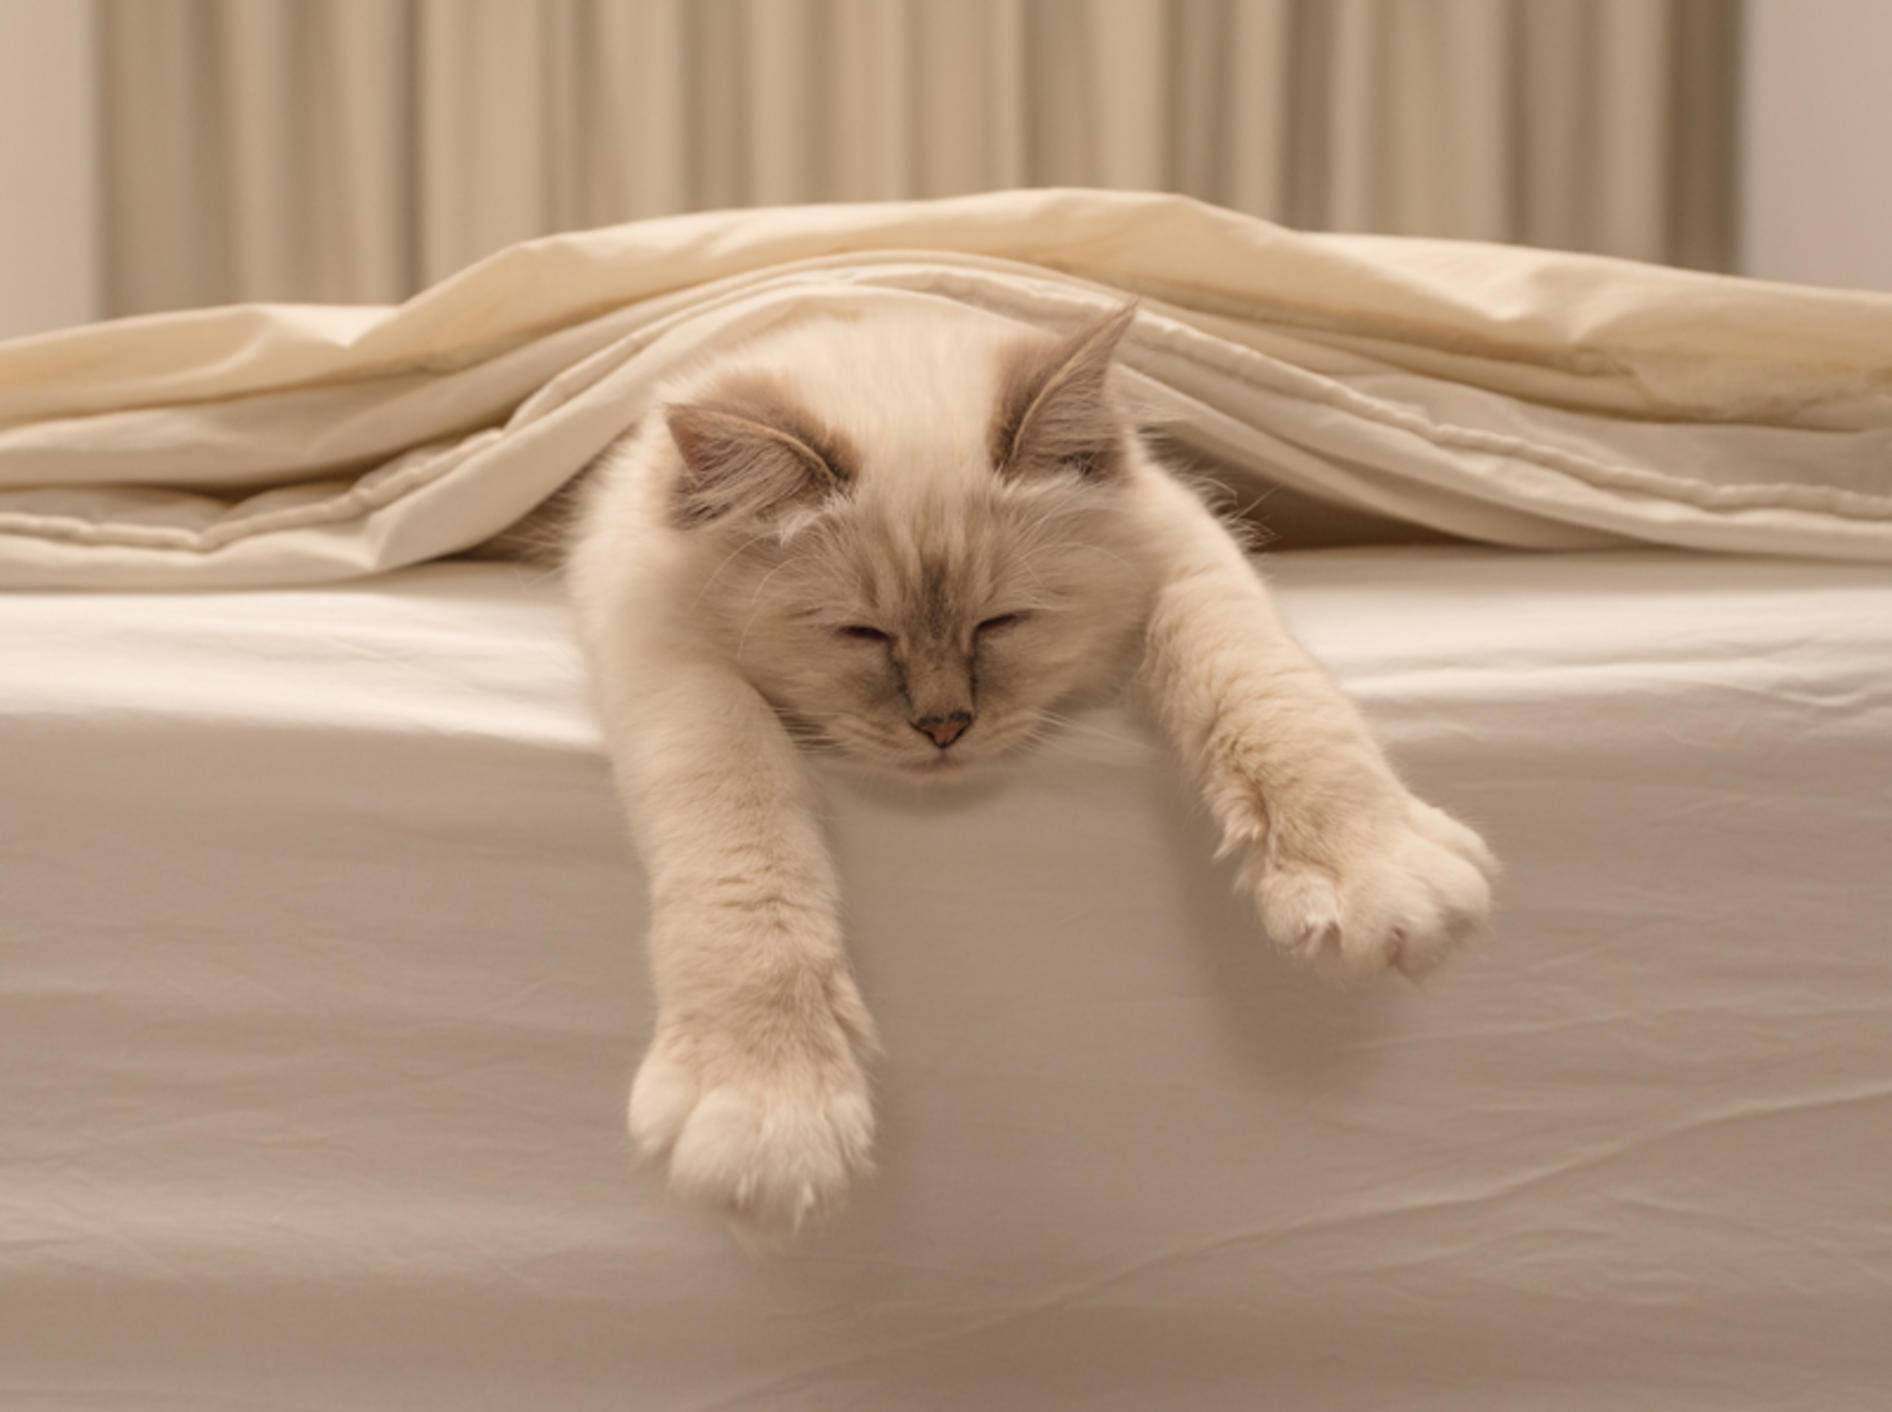 Schnurr! Diese Katze fühlt sich im Bett richtig wohl – Shutterstock / Jorn Out